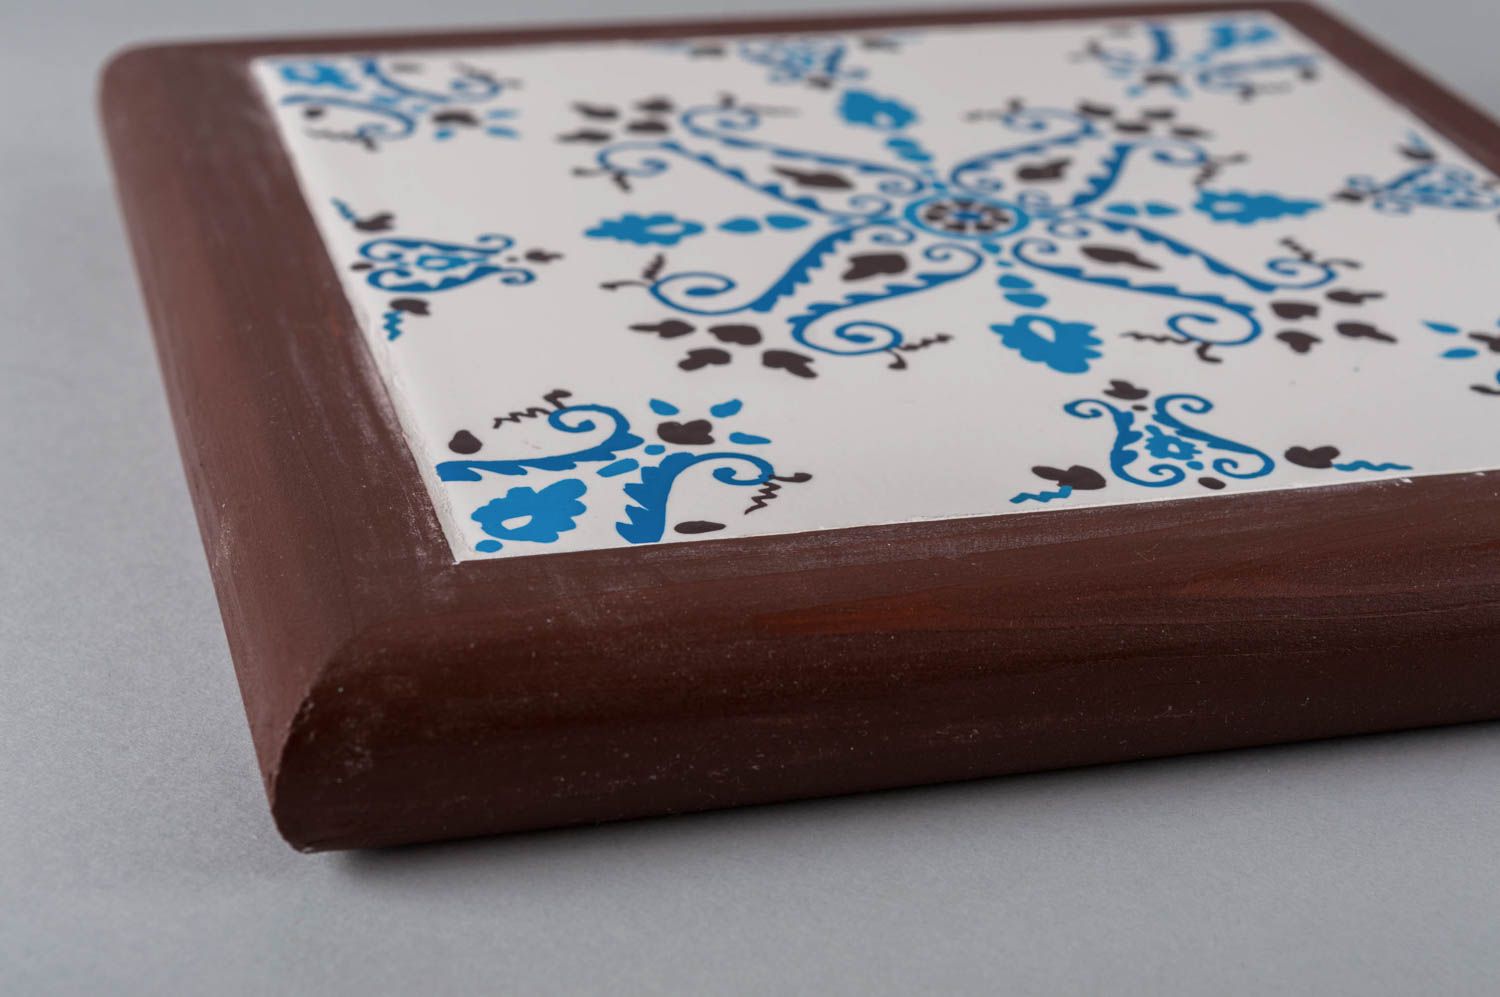 Handmade ceramic tile in frame unusual interior decor designer picture photo 5